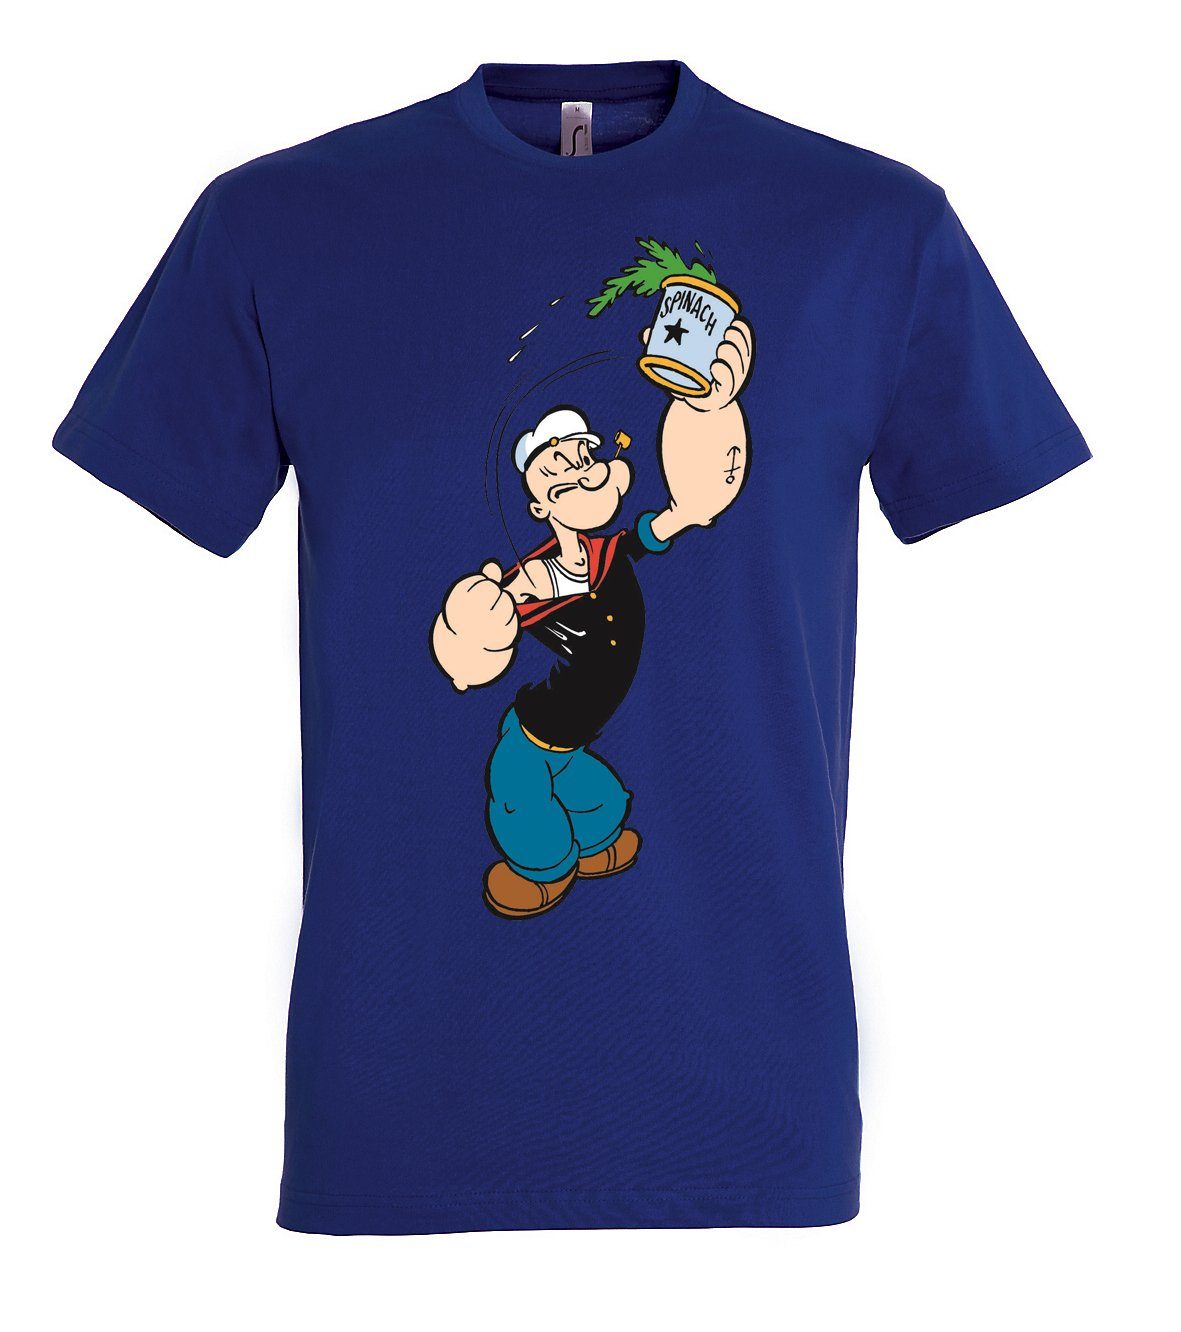 Fun Frontprint Herren T-Shirt Mit Navyblau T-Shirt trendigem Popeye für Designz Youth